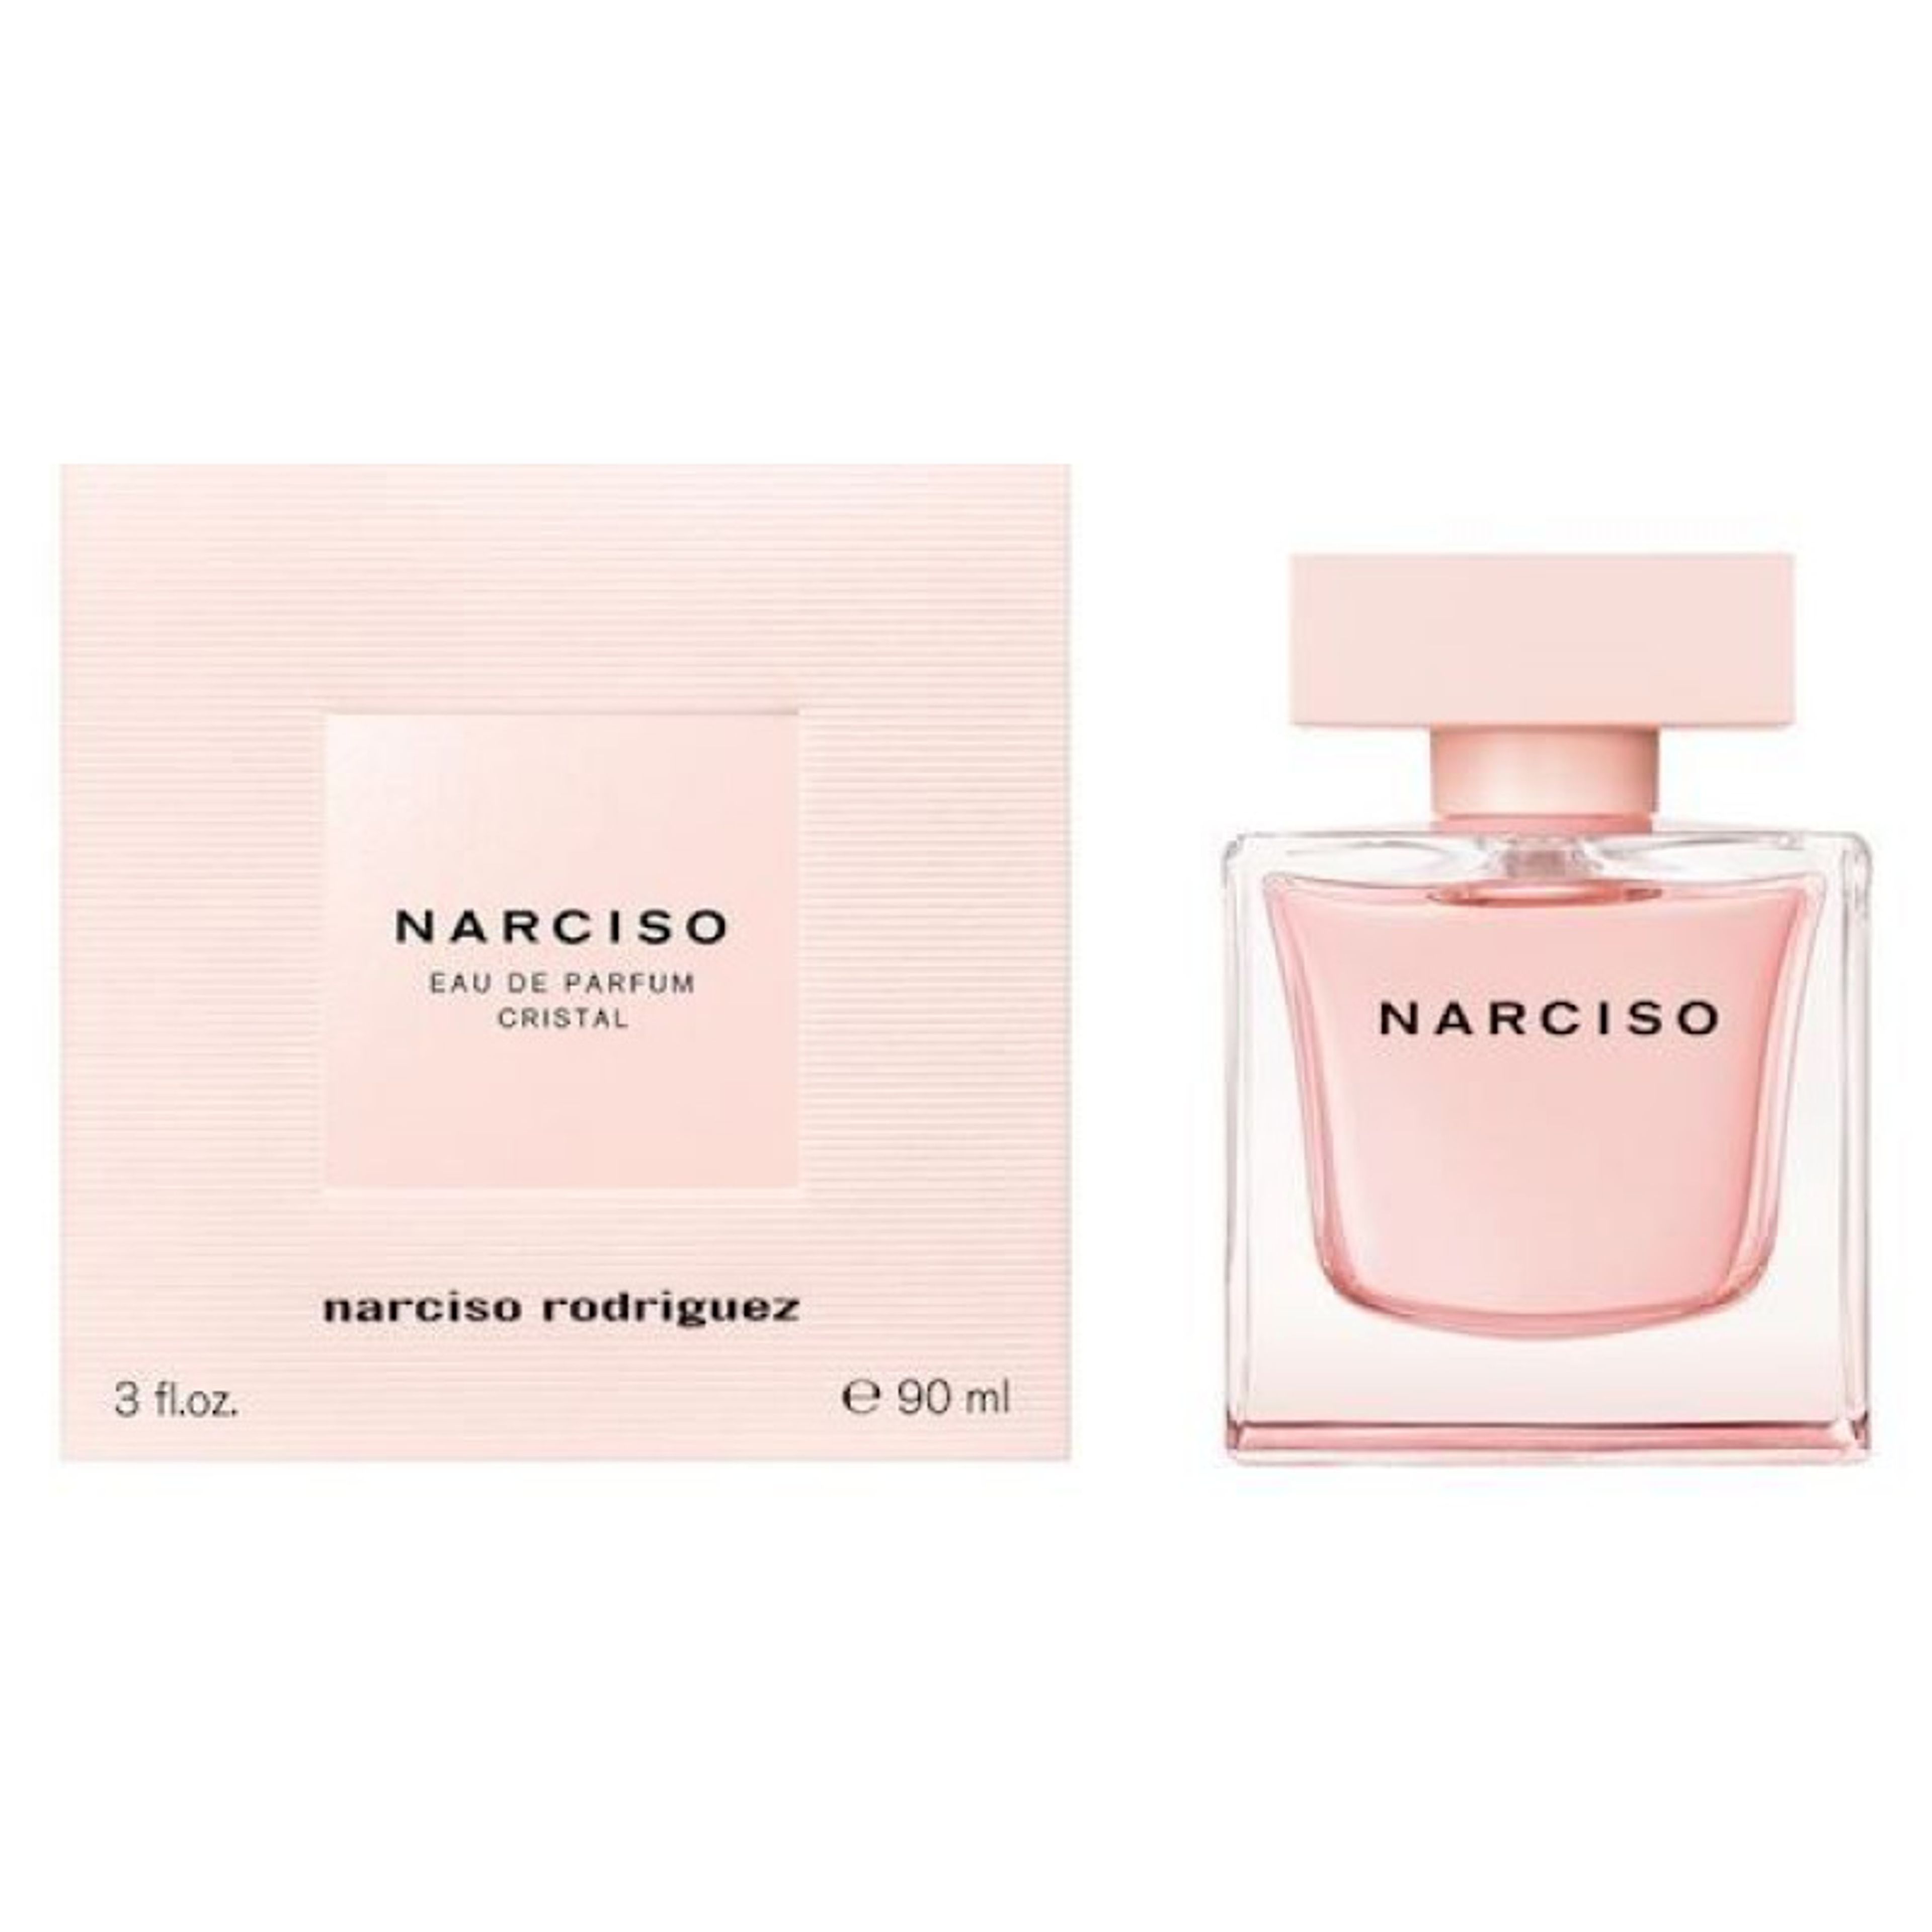 Narciso Rodriguez Narciso Cristal Eau De Parfum 2